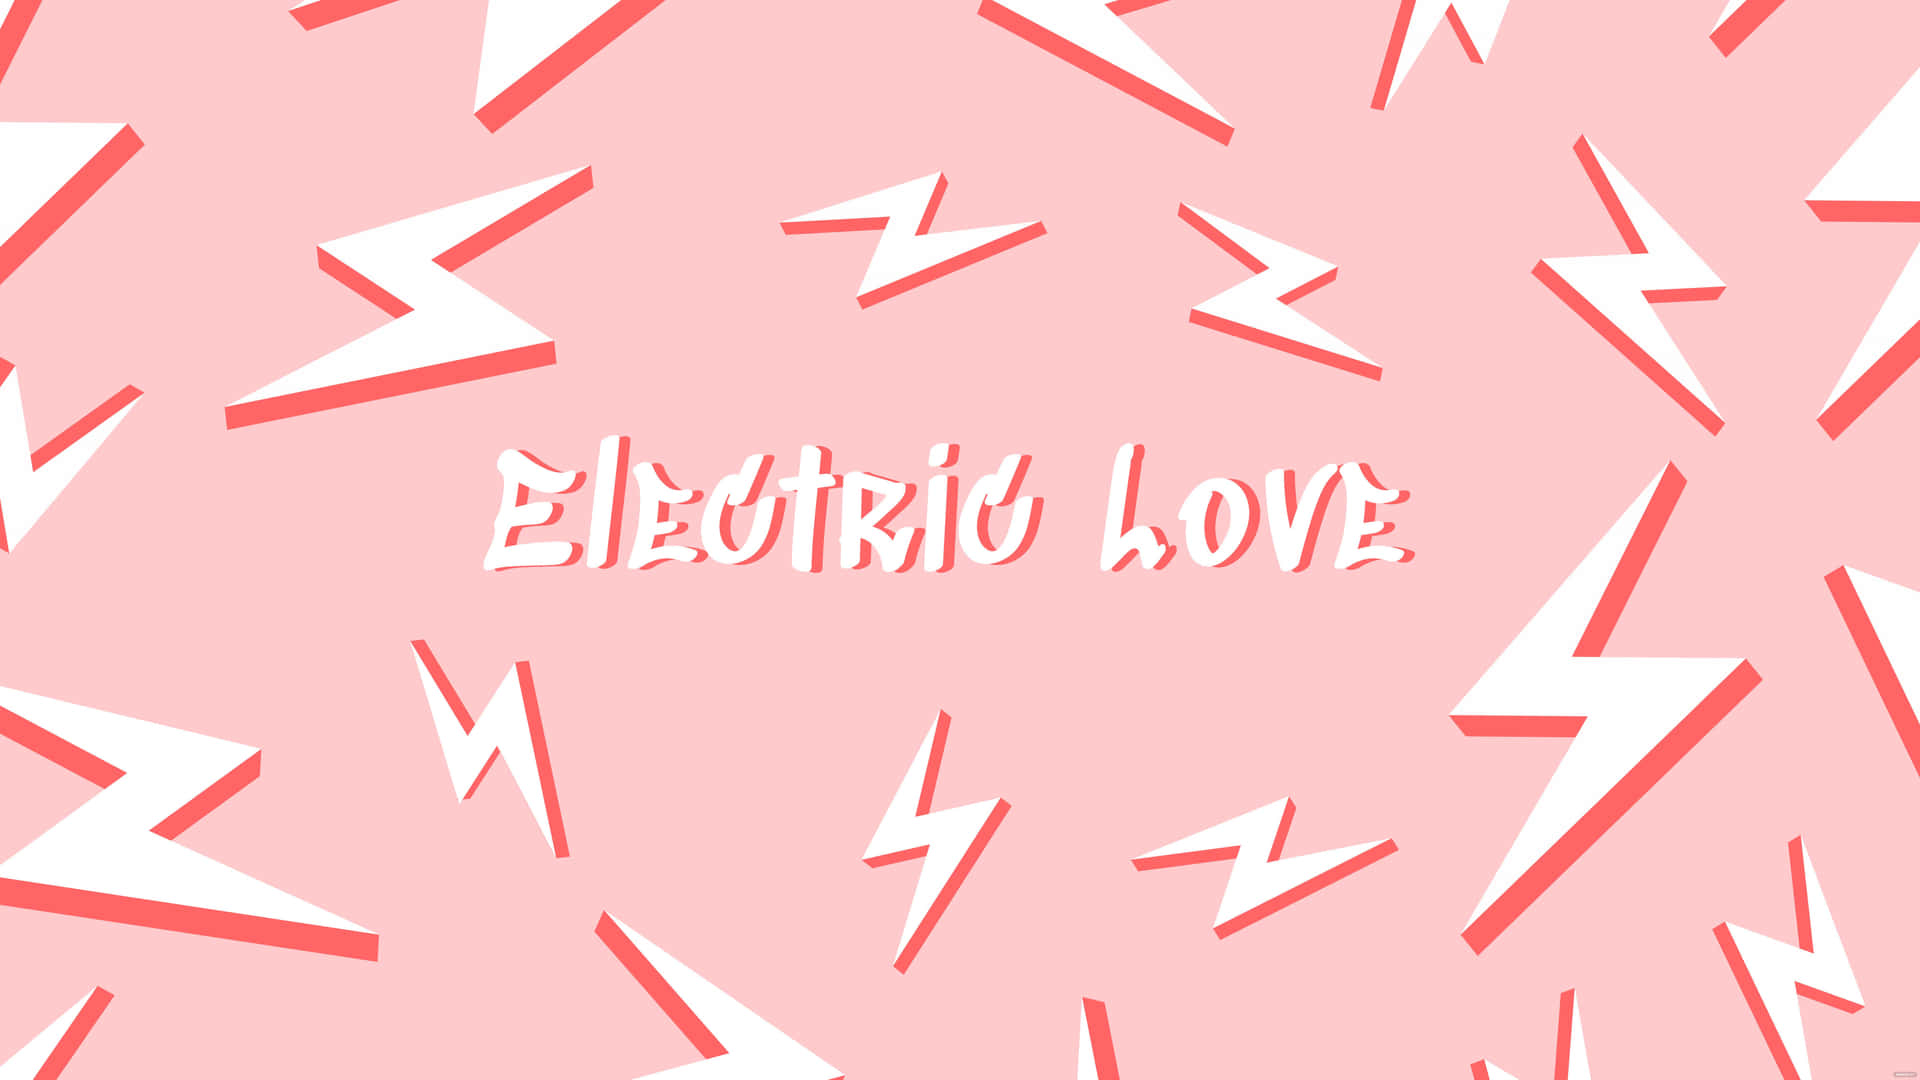 Electric Love Graphic Design Wallpaper